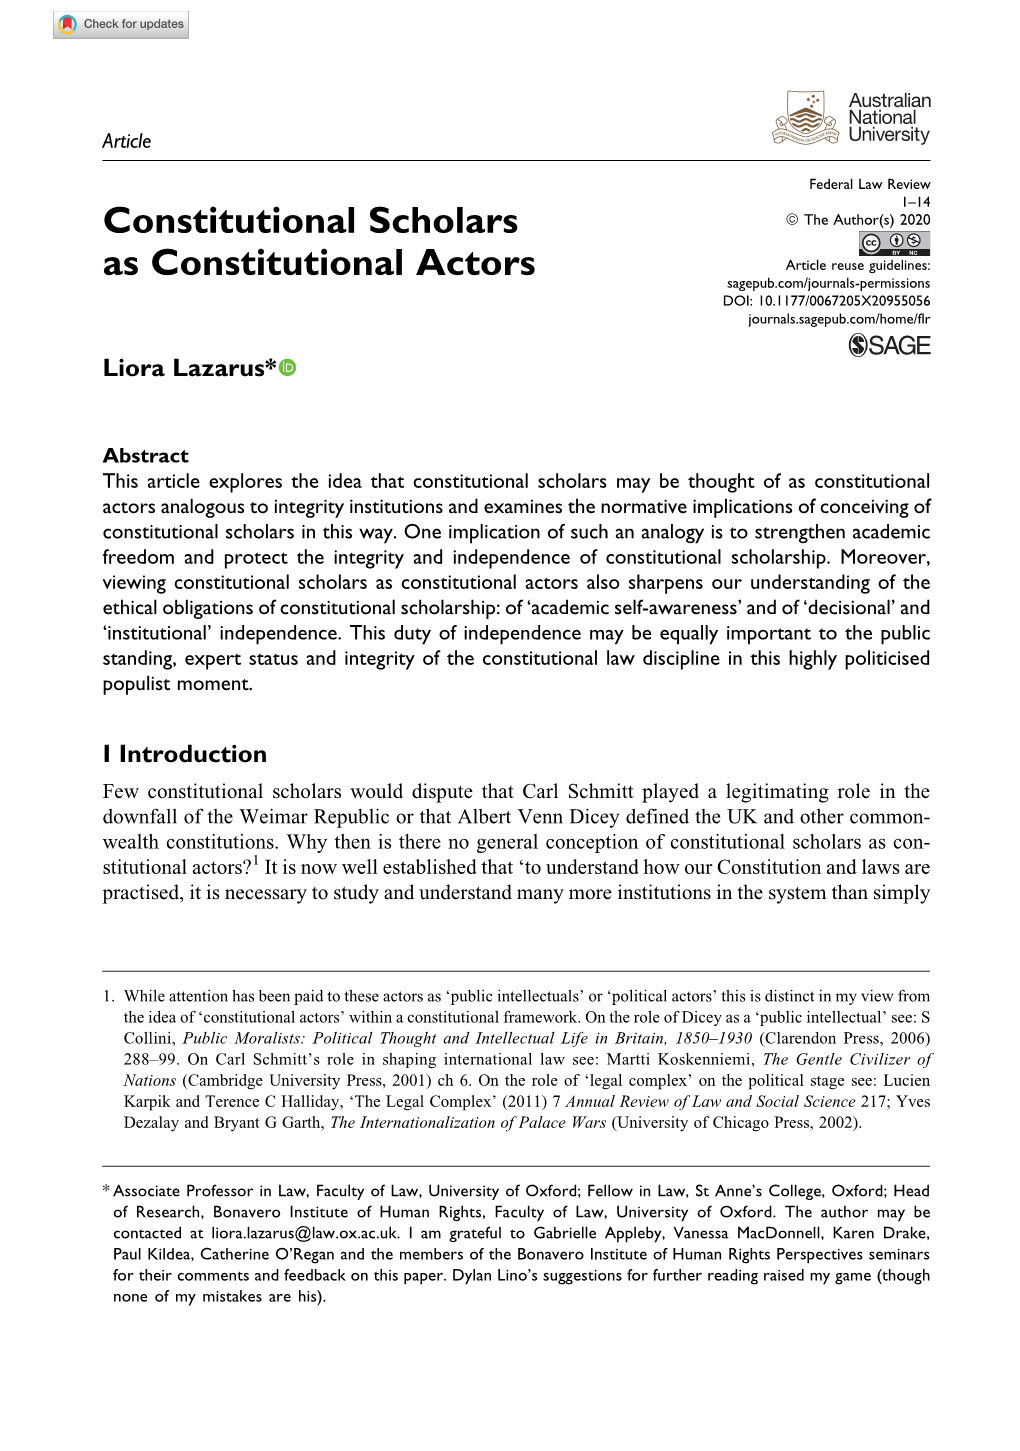 Constitutional Scholars As Constitutional Actors